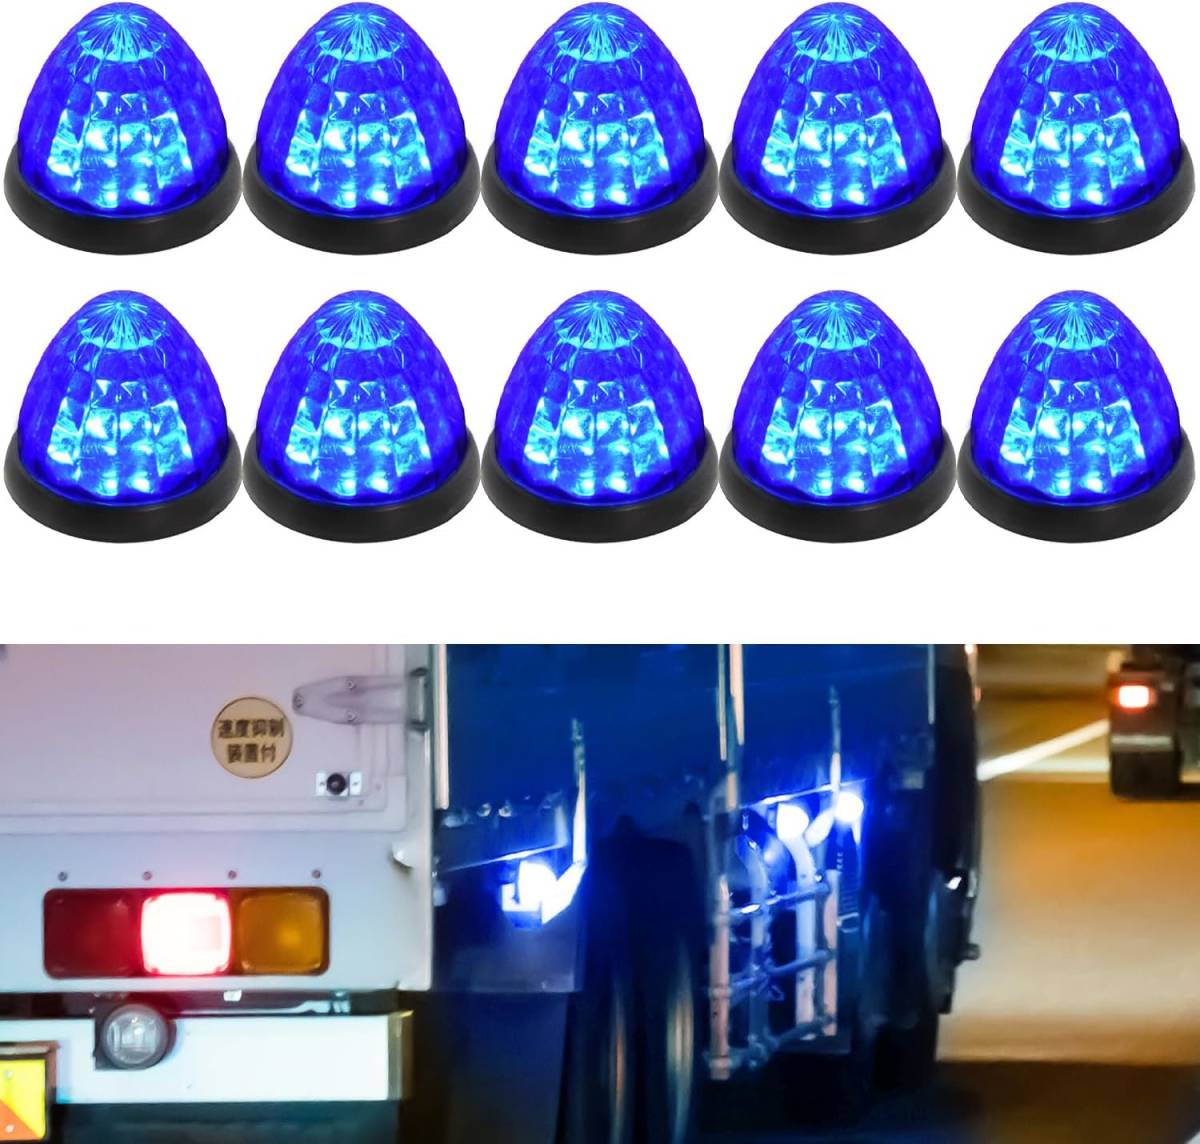 トラック用 サイド マーカー 24v LED ダウンライト マーカー 高輝度 COB LED ランプ 車幅灯 10個セット ブルー_画像1